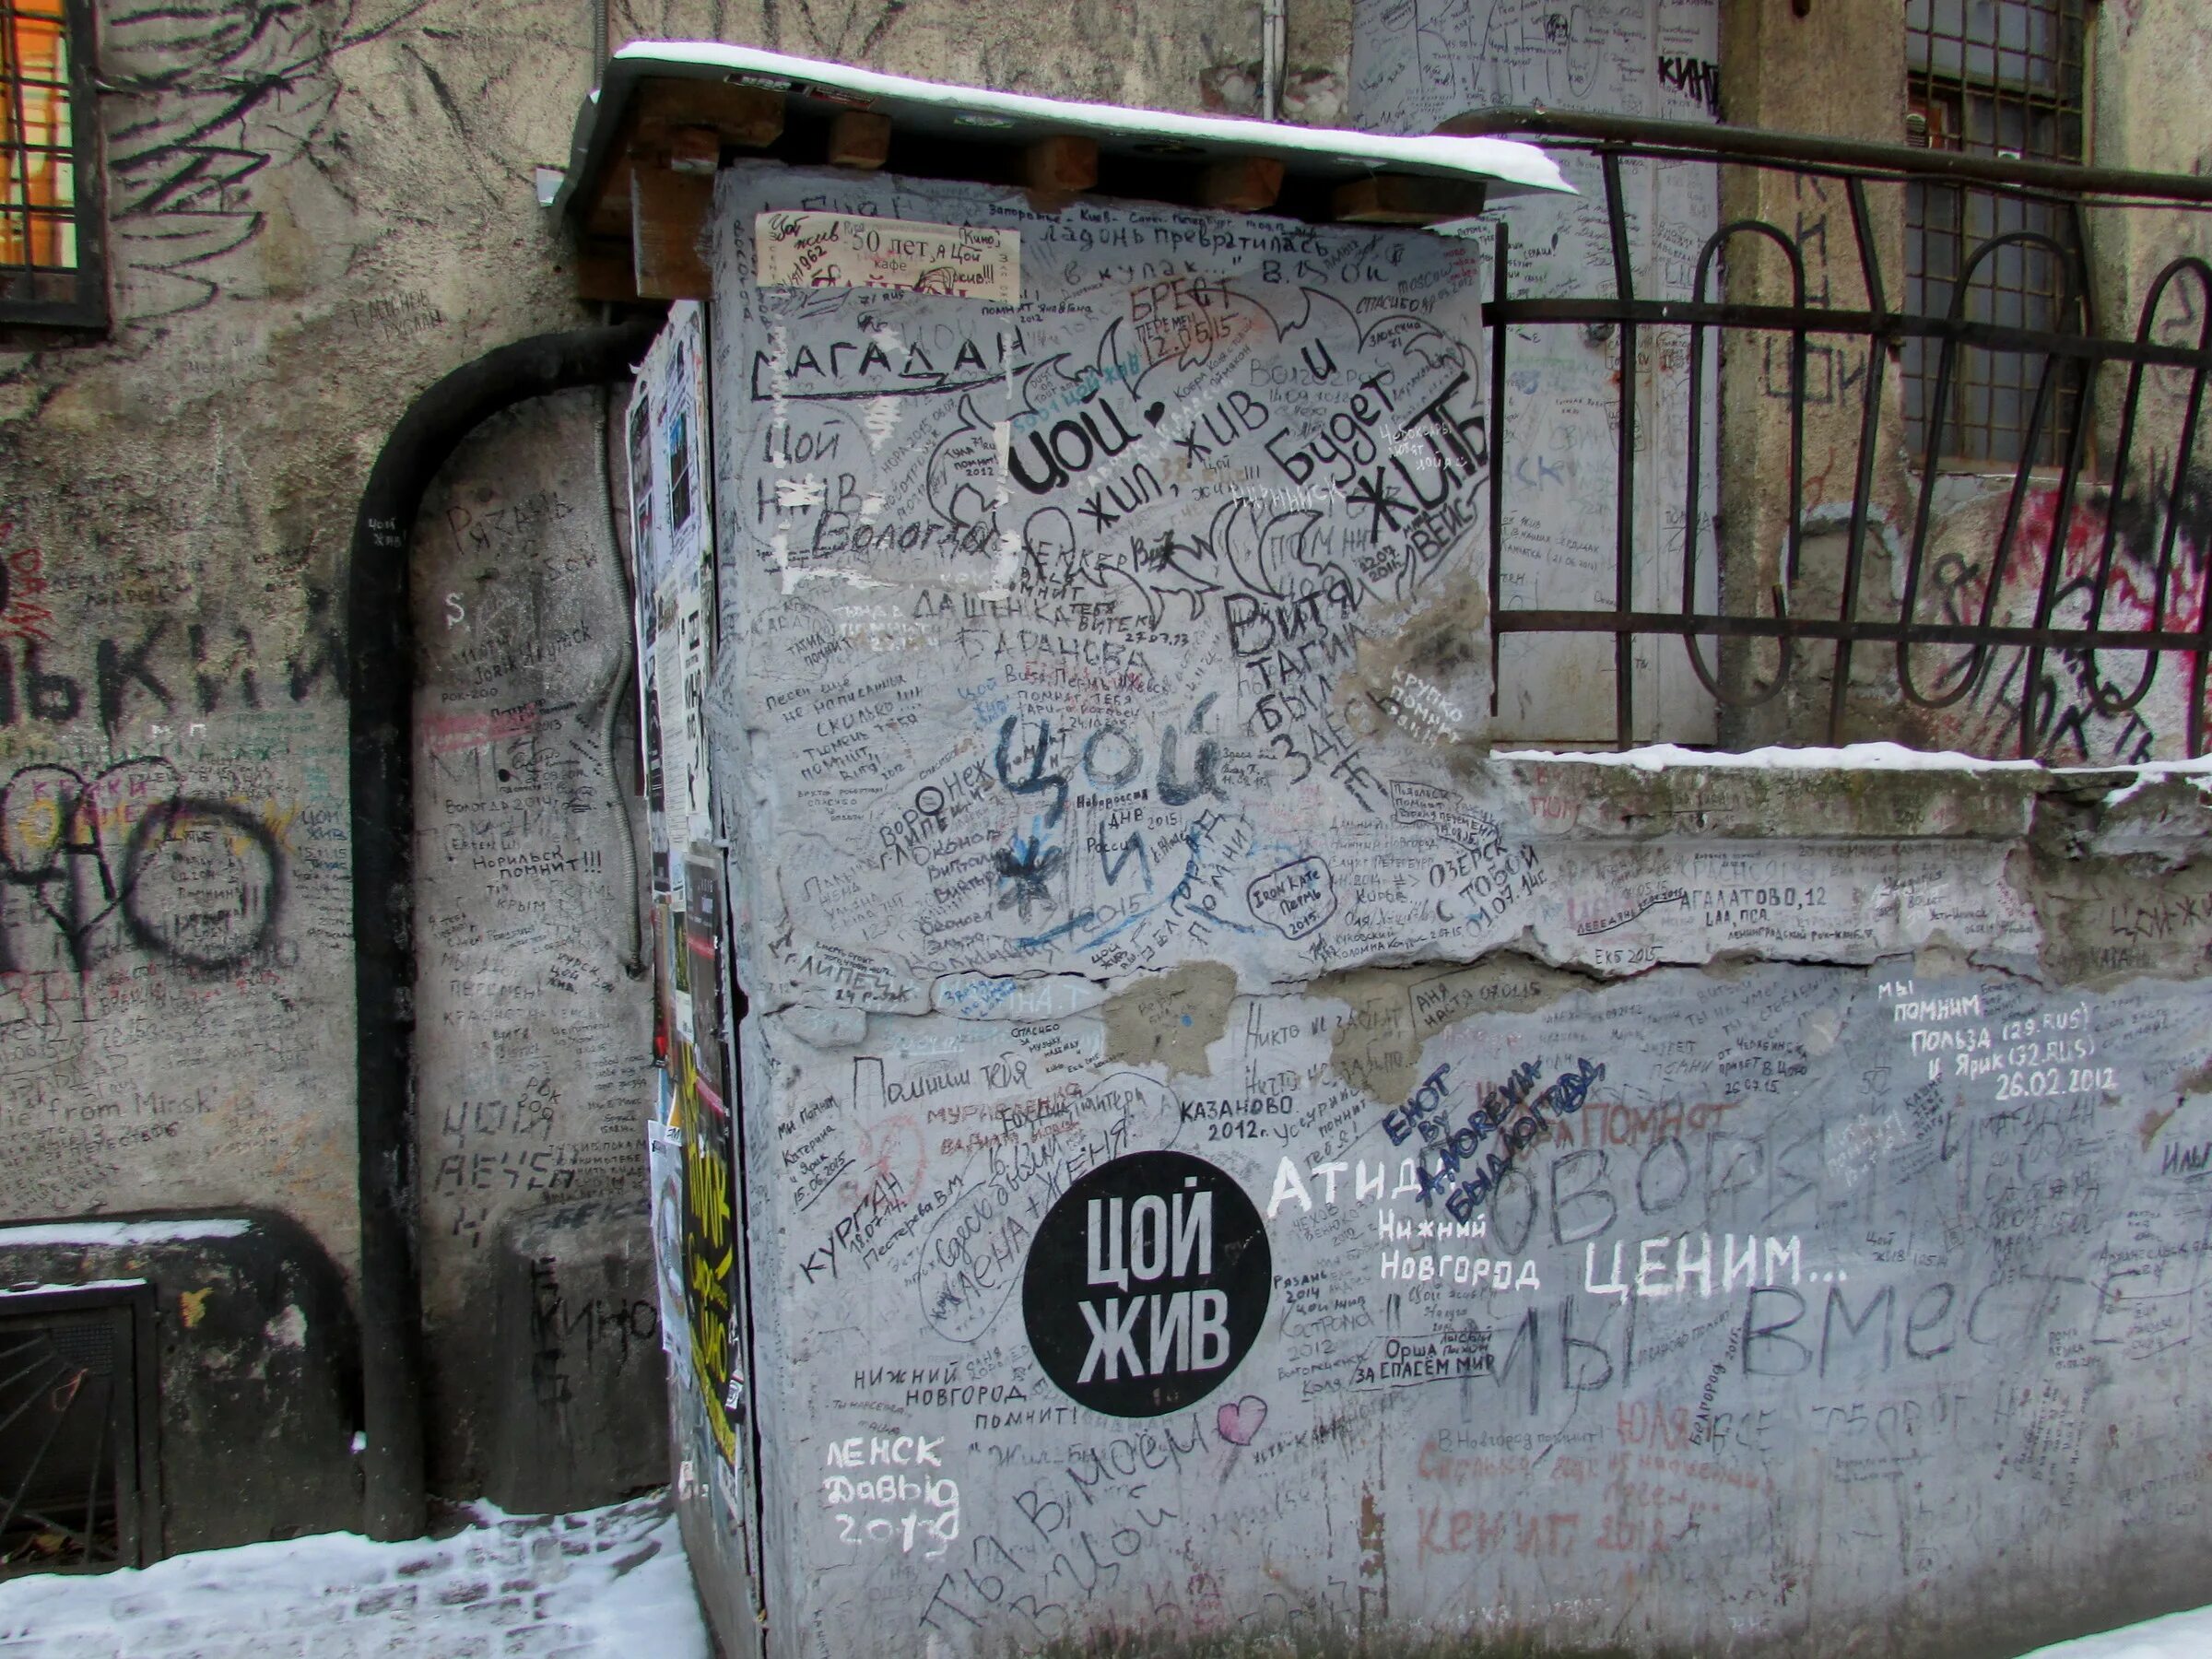 Котельная камчатка ул блохина 15 отзывы. Клуб-музей «котельная Камчатка». Котельная Камчатка граффити с Цоем. Граффити на стене. Камчатка Цой Санкт-Петербург.